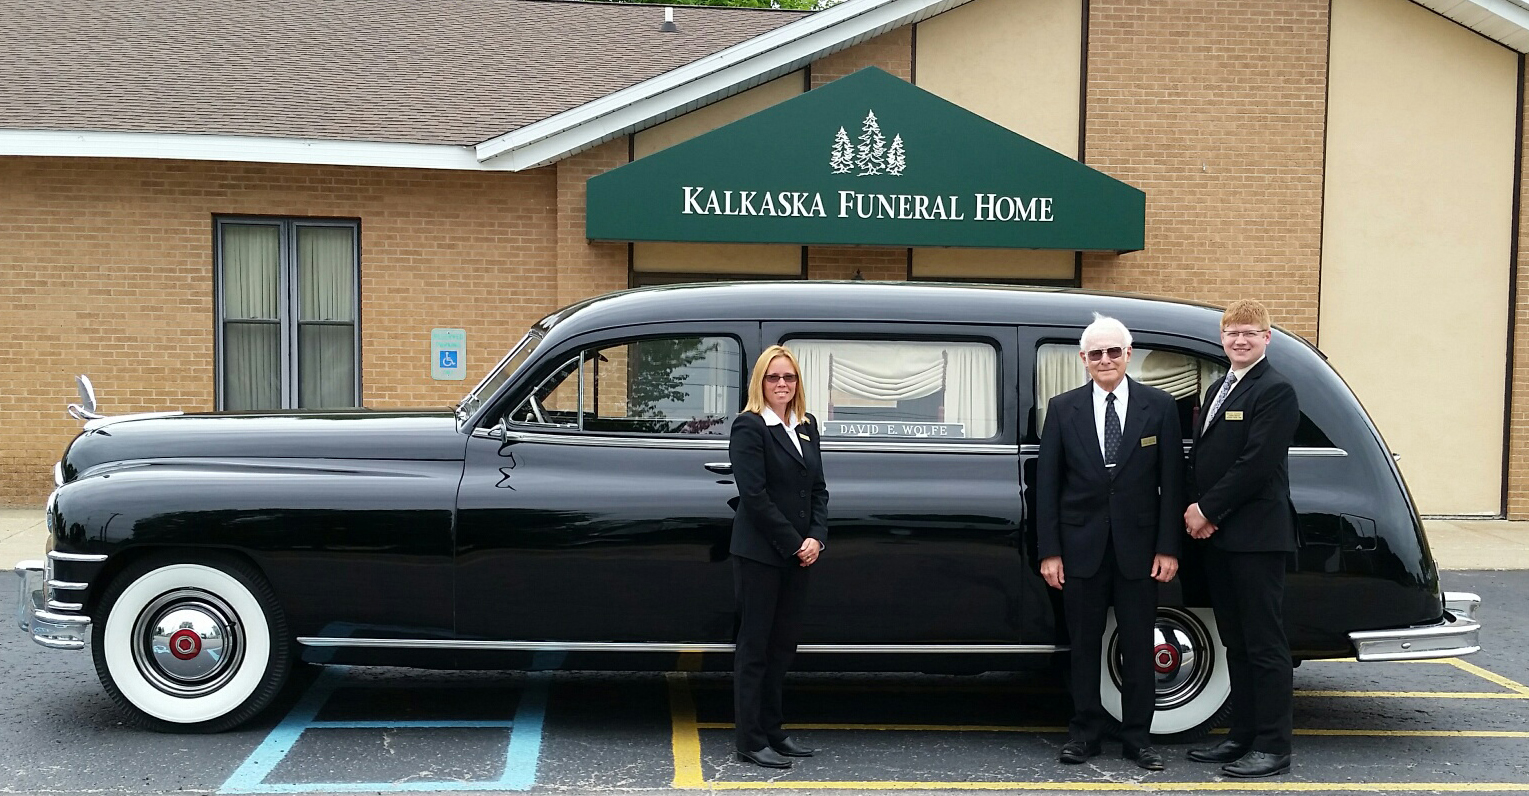 Kalkaska Funeral Home 152 S Cedar St, Kalkaska Michigan 49646